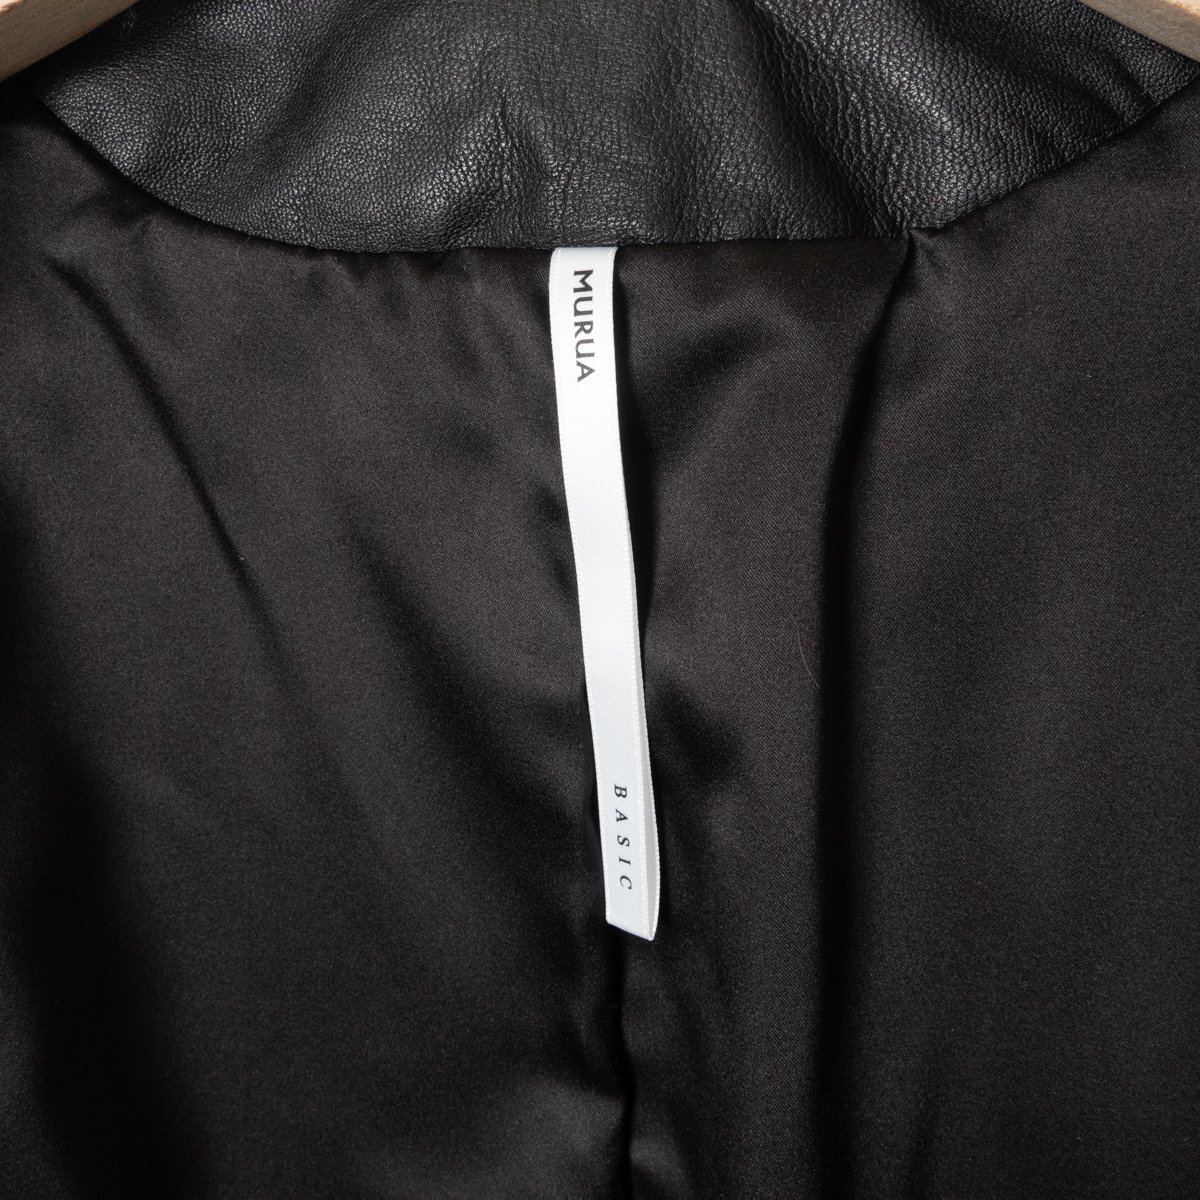 ムルーア MURUA ノーカラー カラーレス ラム レザー 本革 ジャケット ショート丈 1 レディース 婦人 女性 ブラック 黒 モード 肩パッド_画像6